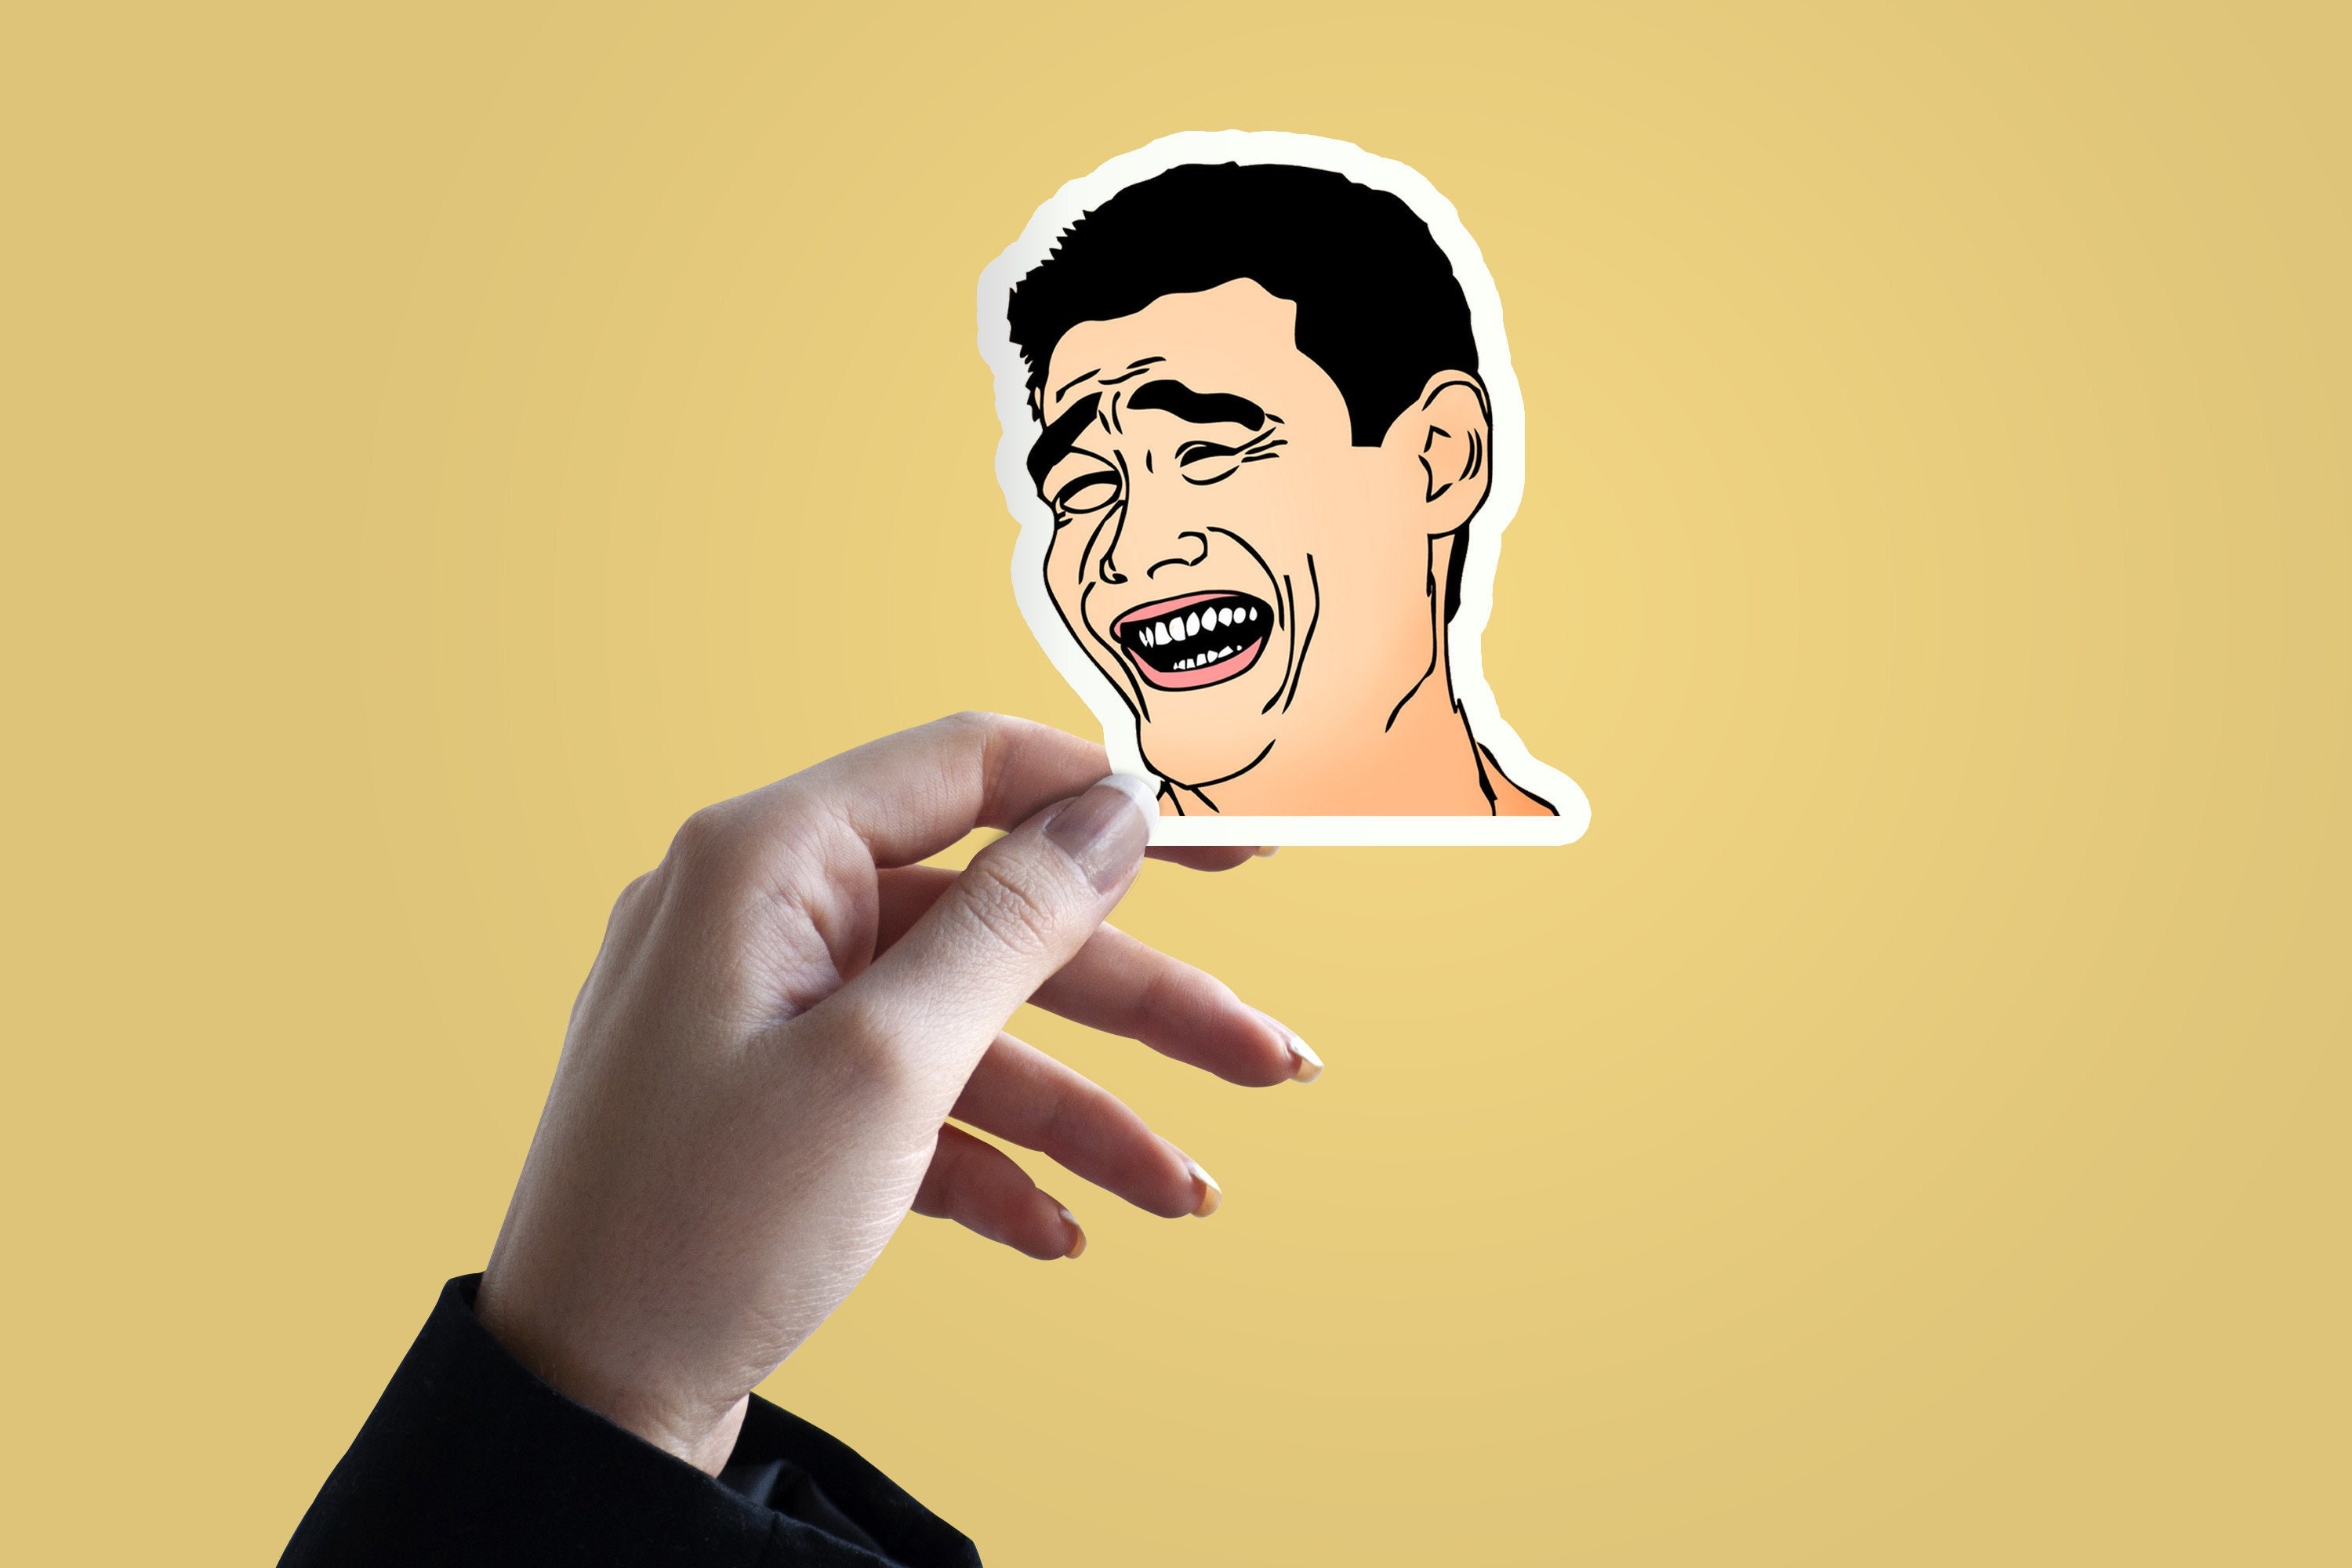 Troll Face Meme Sticker Vinyl Decal - Car Window Trollface Wall